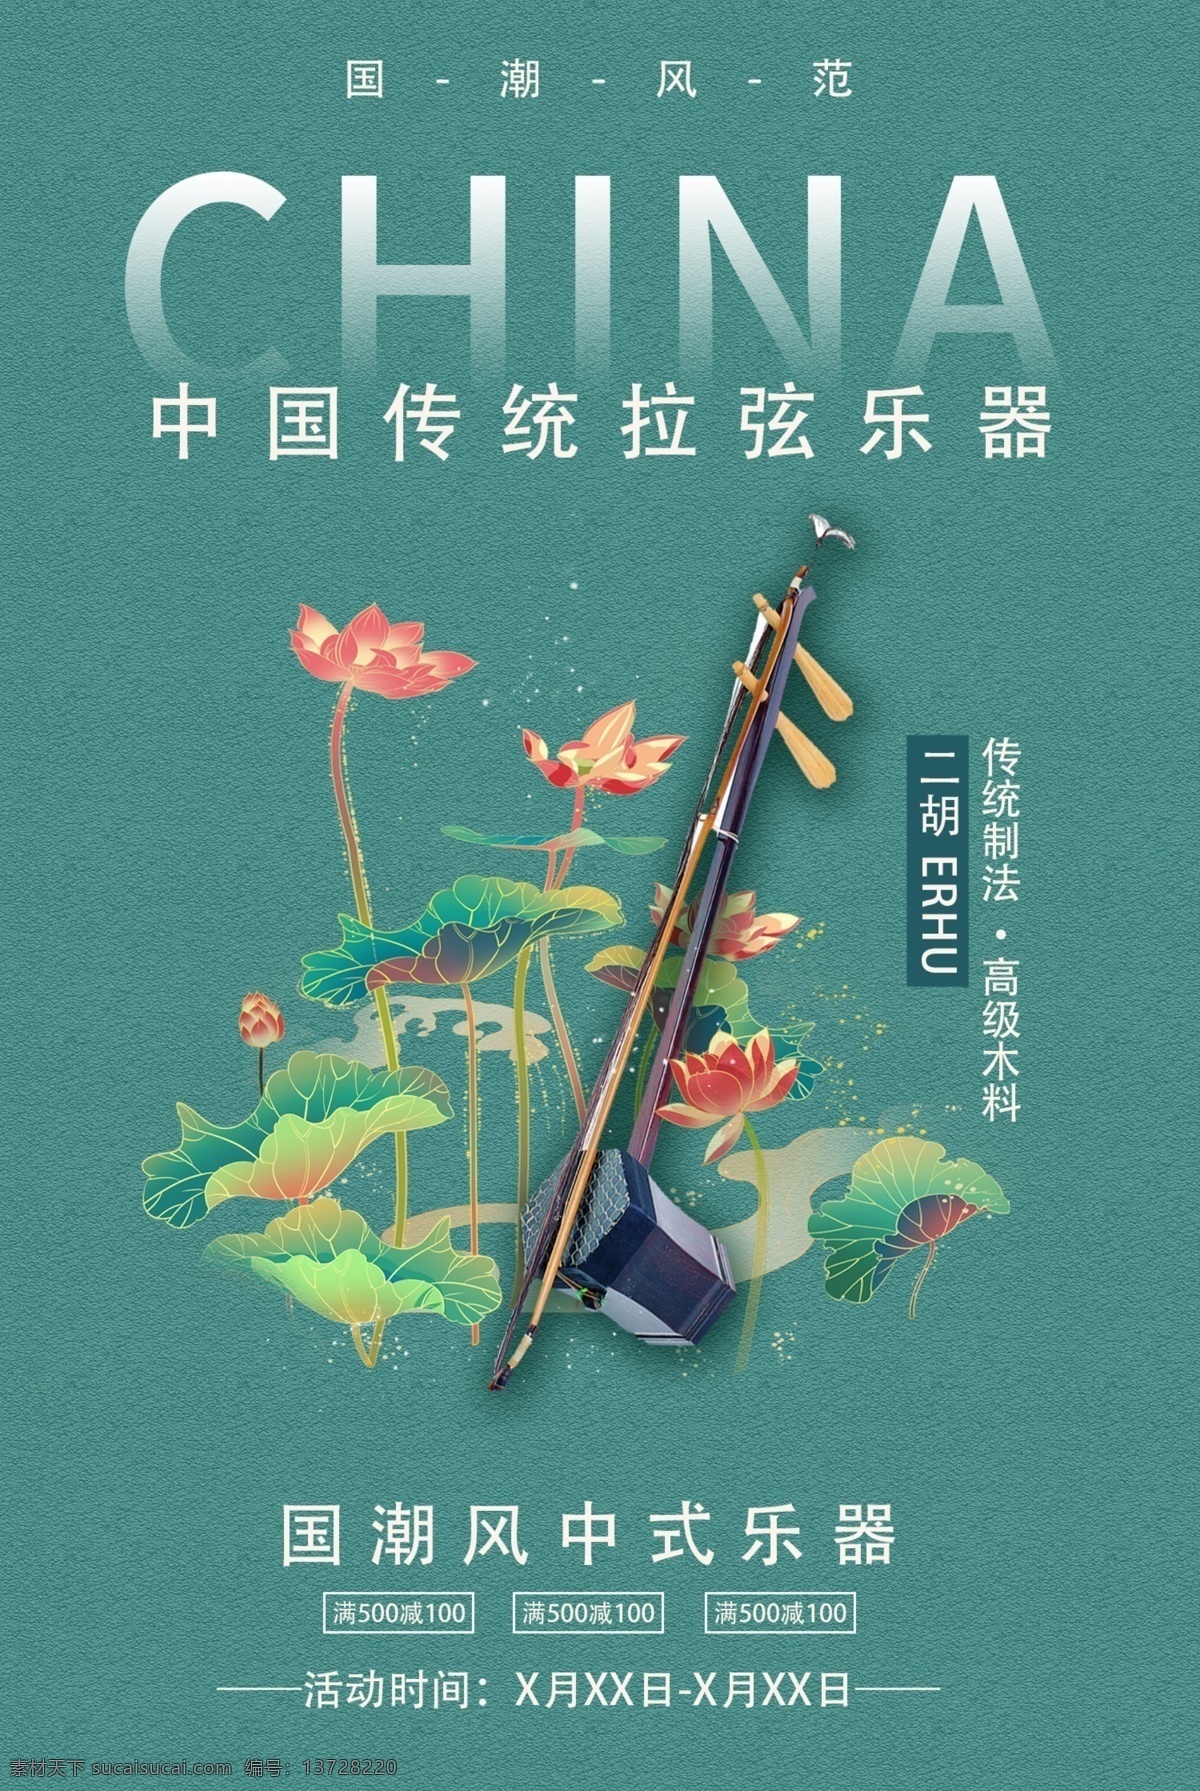 二胡 传统 乐器 活动 海报